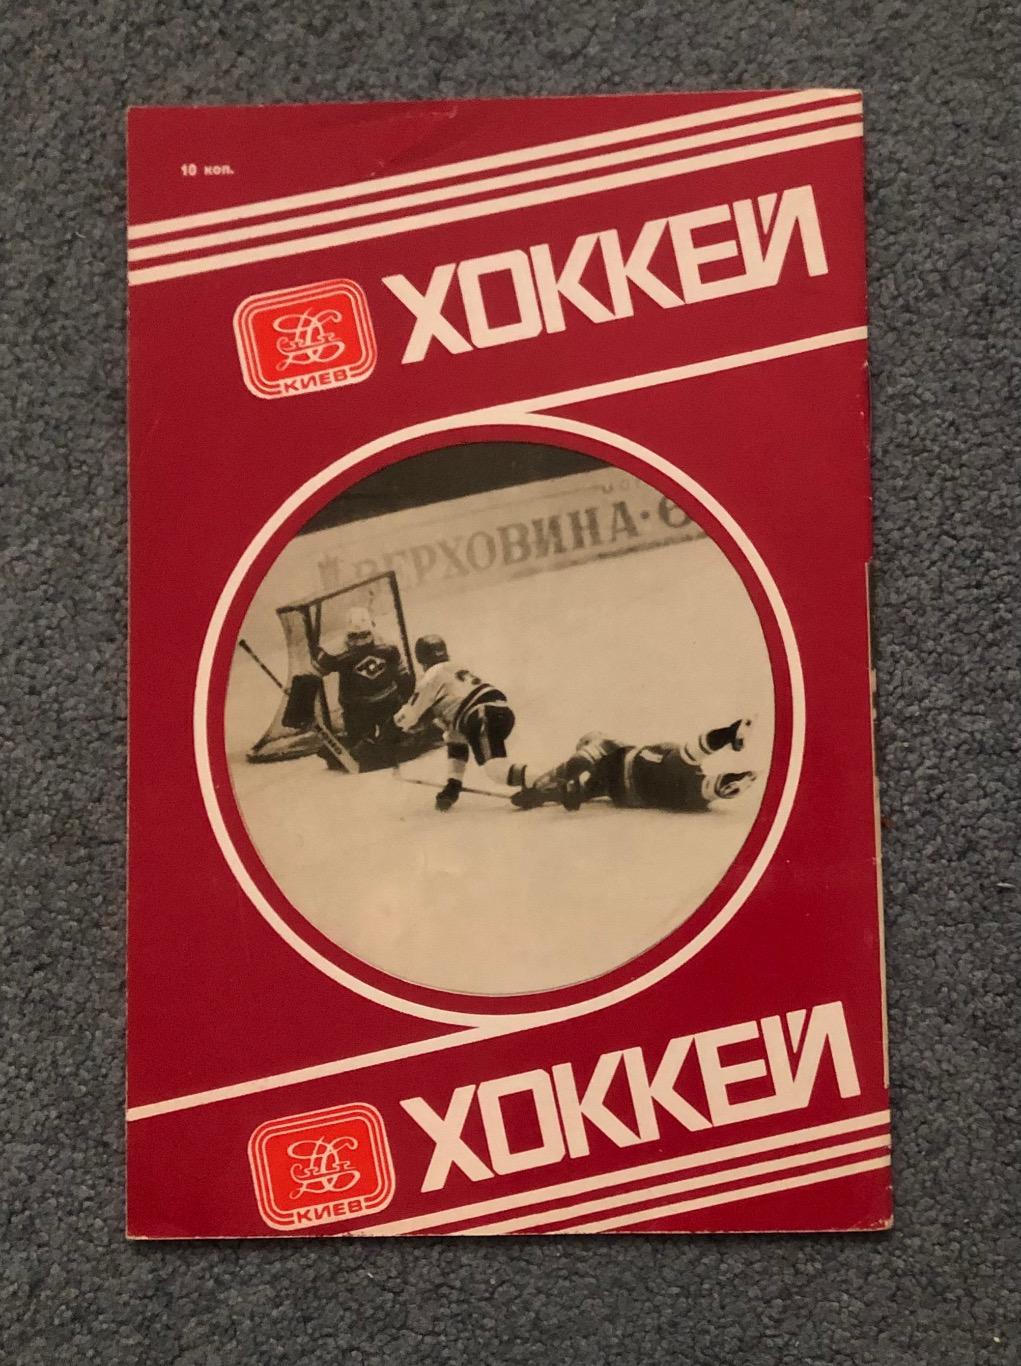 Сокол Киев - Автомобилист Свердловск, 26.11.1979 1